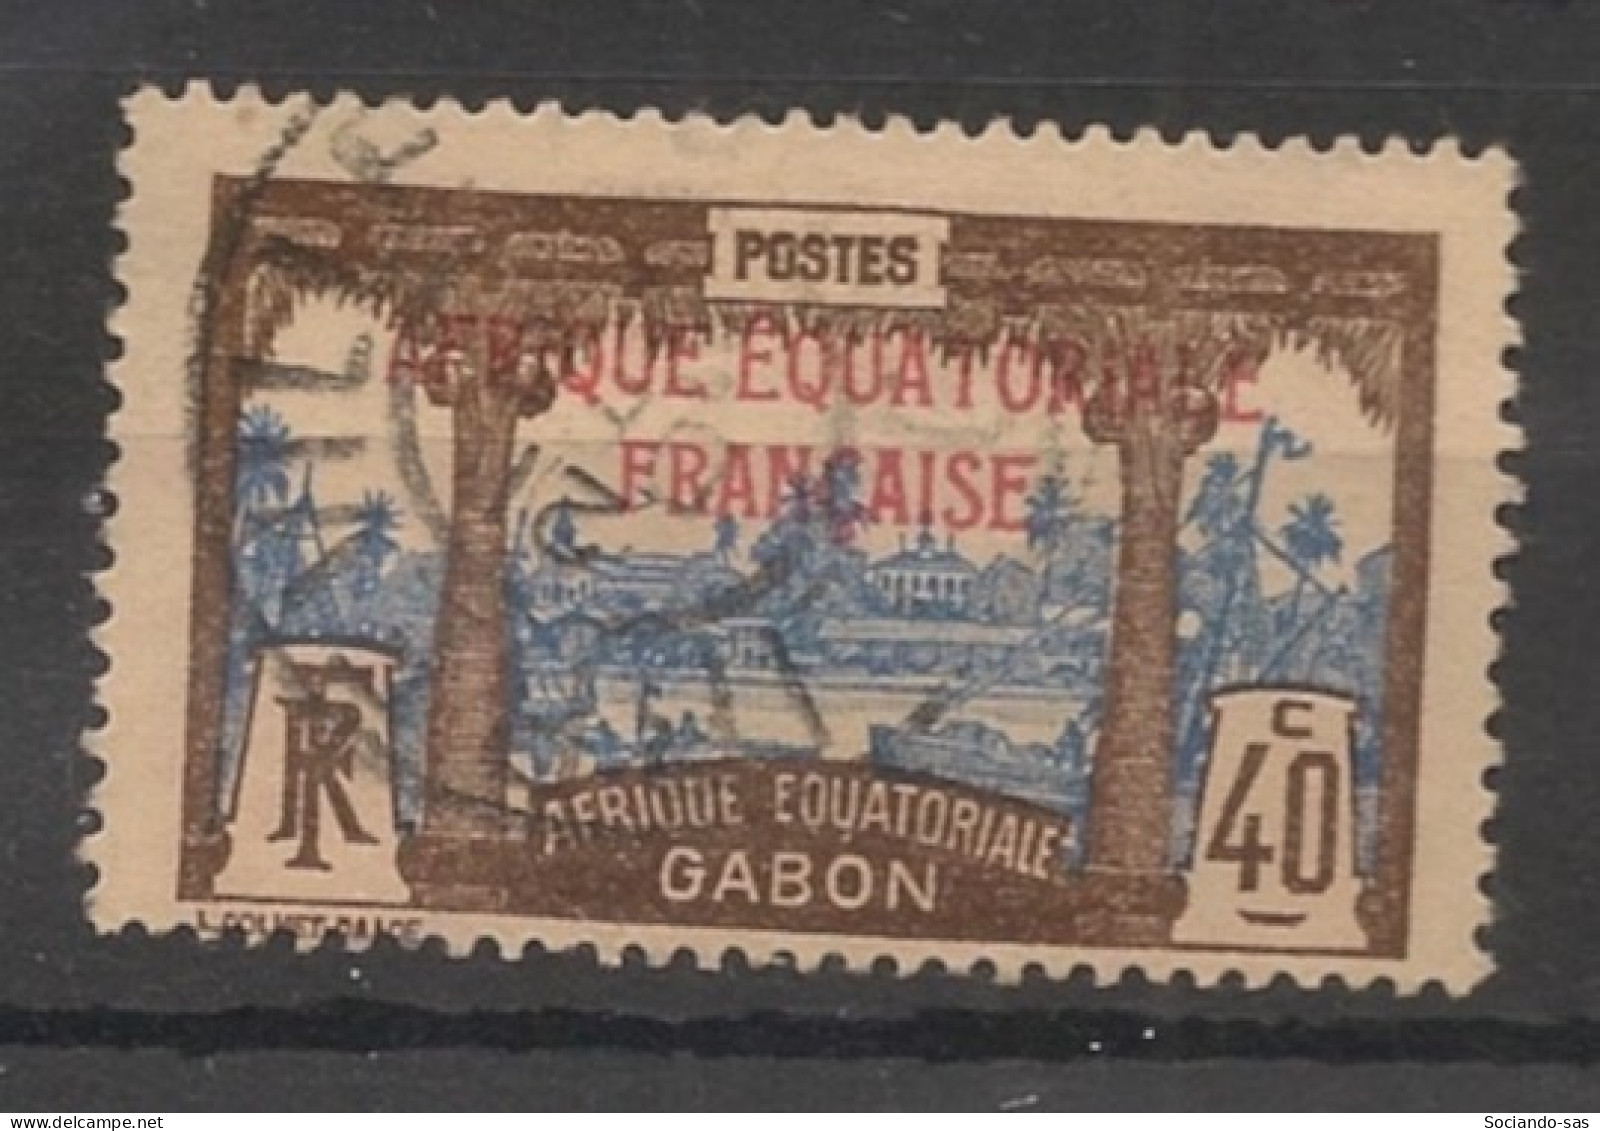 GABON - 1924-27 - N°YT. 100 - Libreville 40c Brun Et Bleu - Oblitéré / Used - Used Stamps